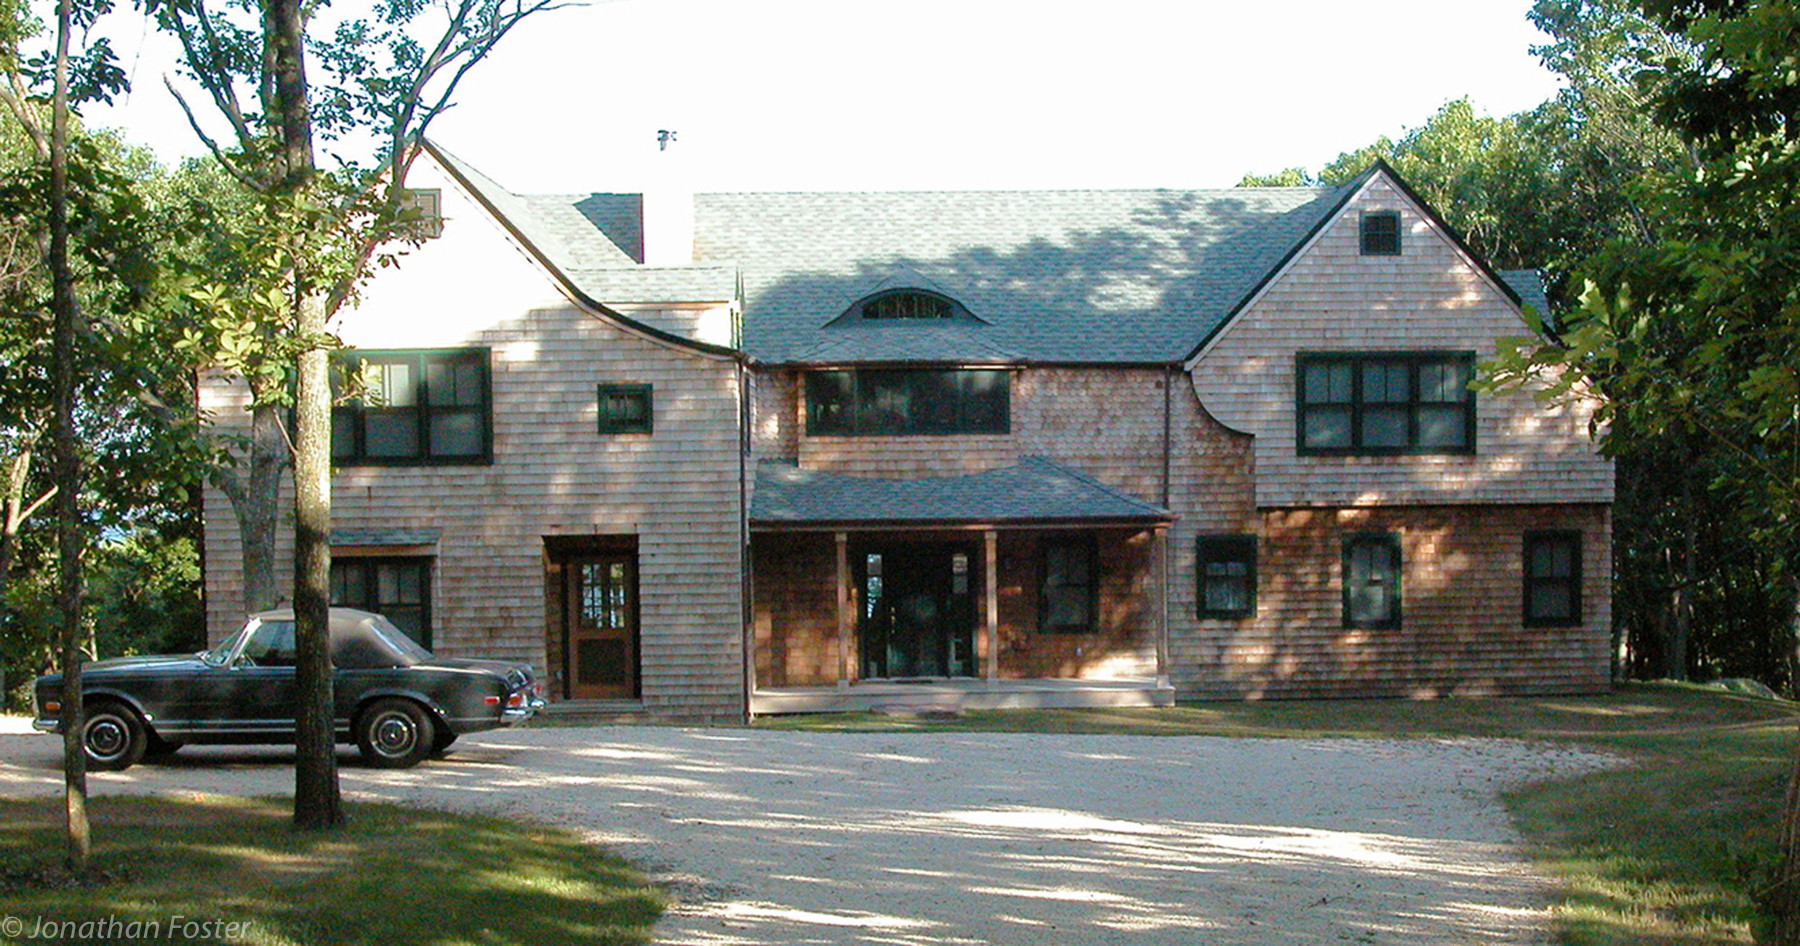 Dinah Rock Road House